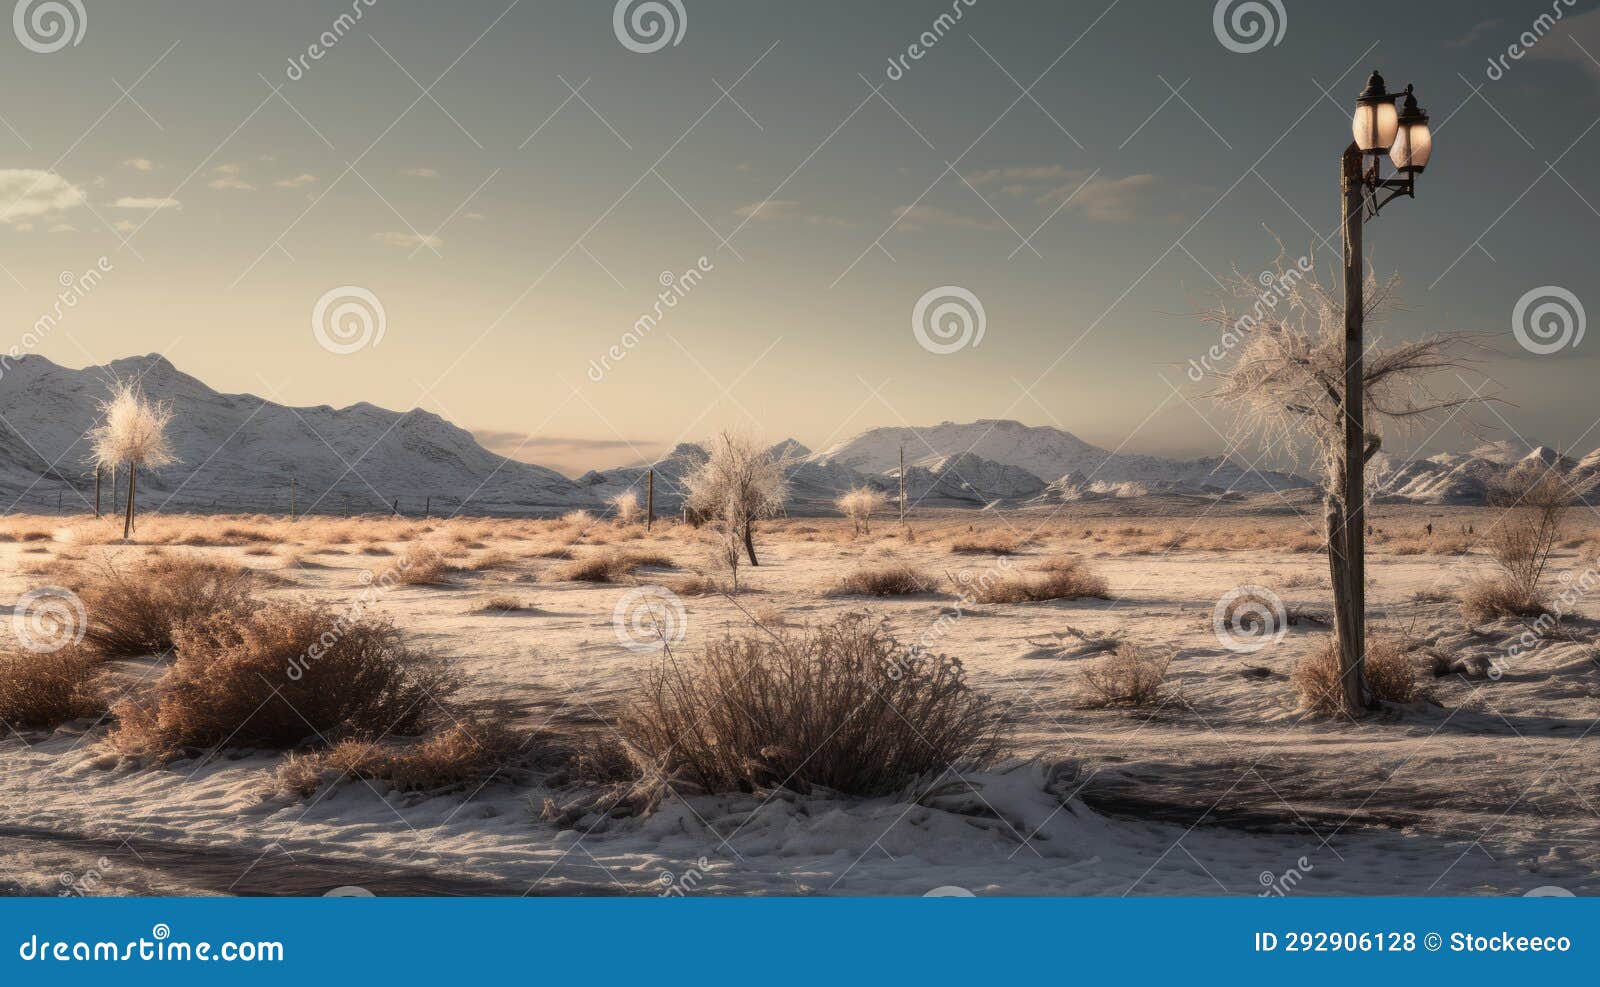 winter landscape in saudi arabia: a stunning scenic image